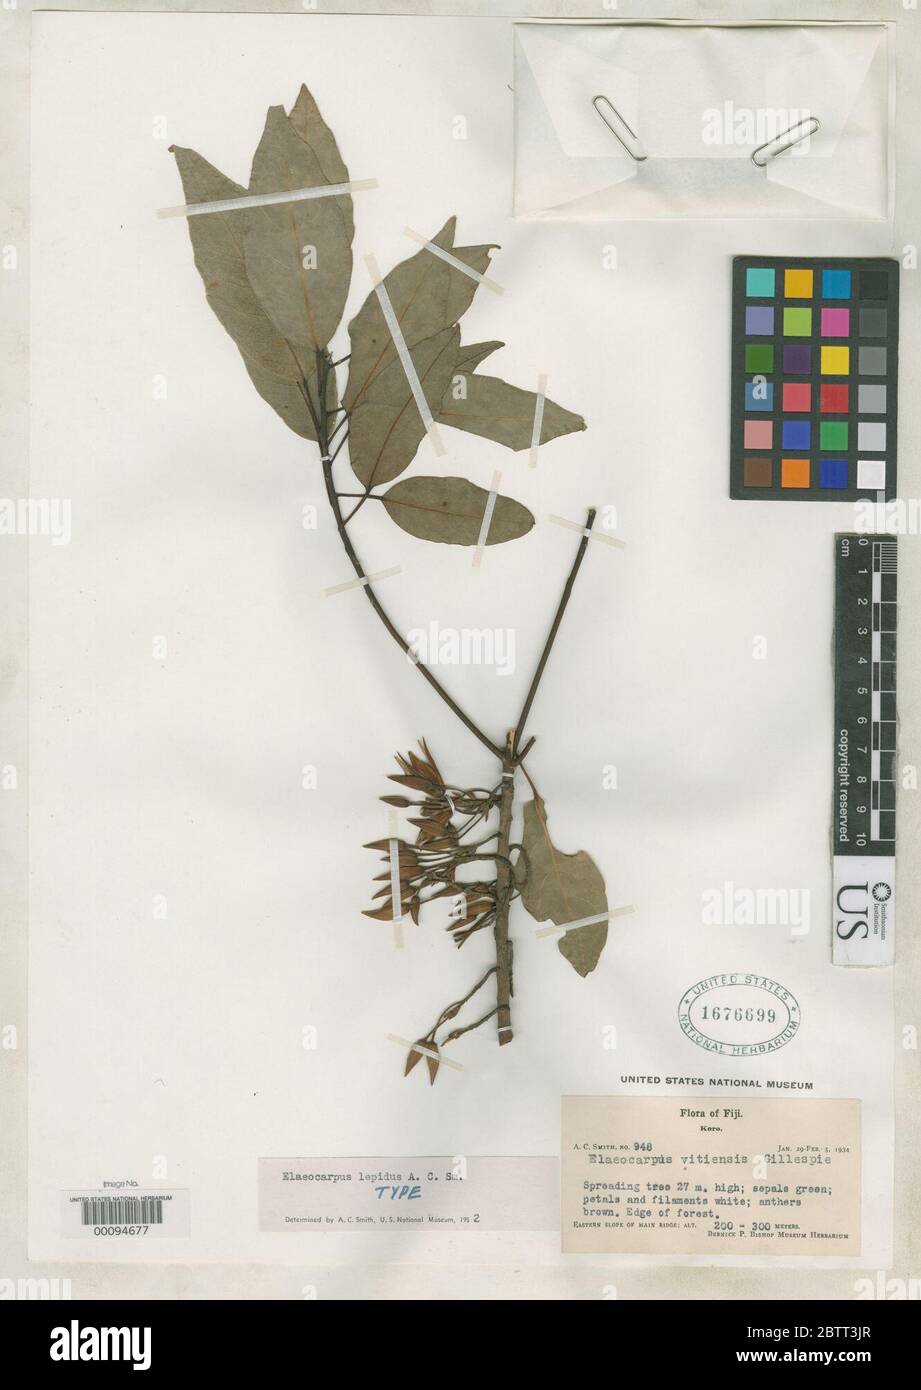 Elaeocarpus lepidus AC Sm. Stock Photo